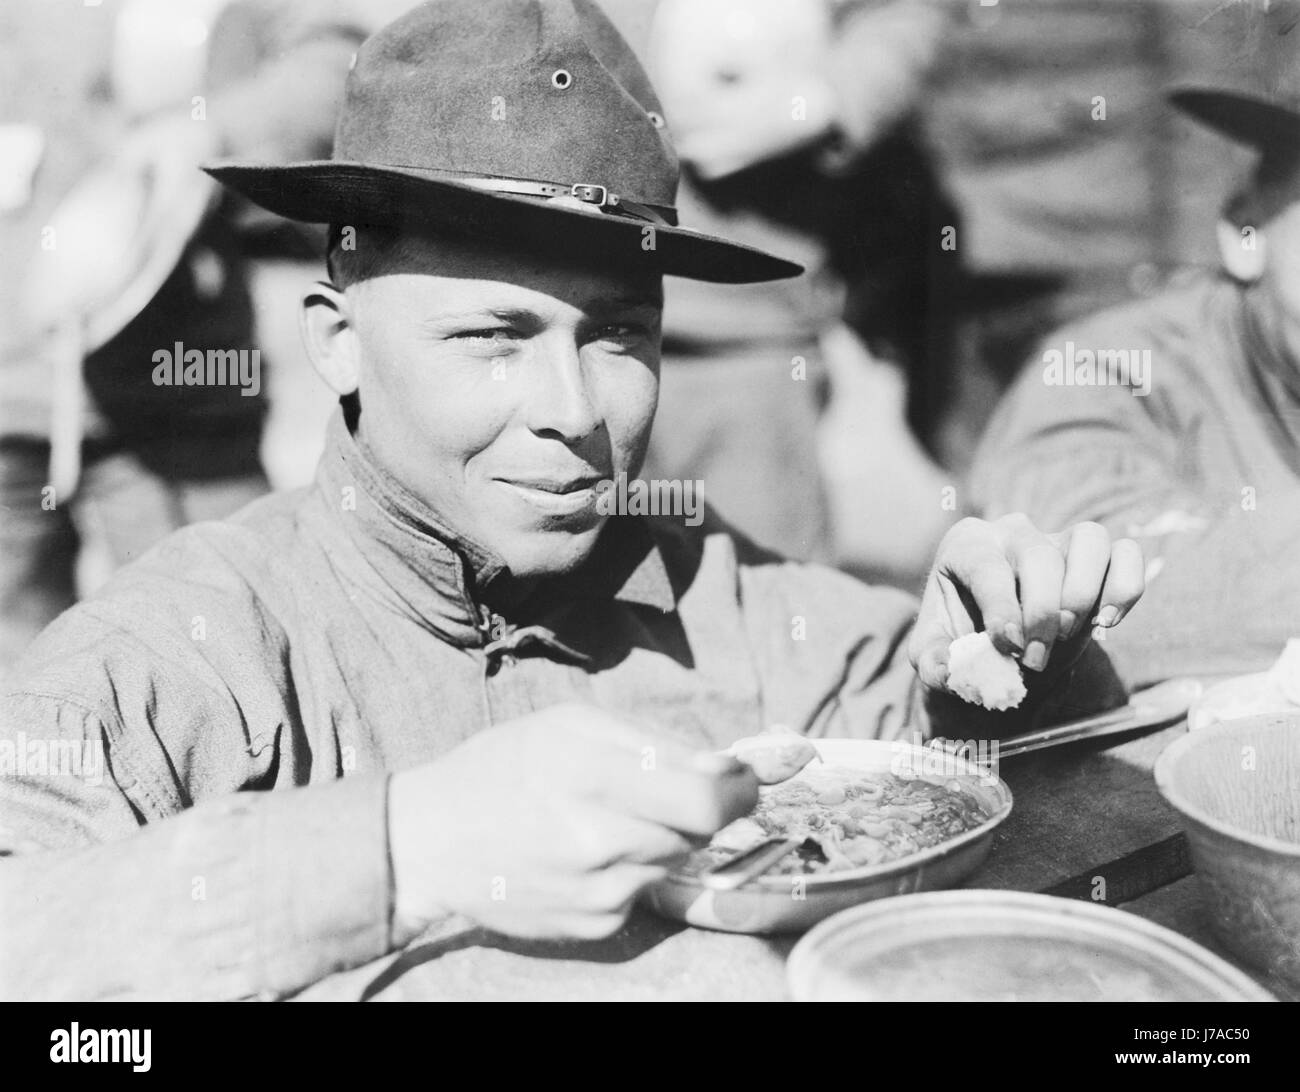 Soldado del Ejército de EE.UU. comer durante la Segunda Guerra Mundial. Foto de stock